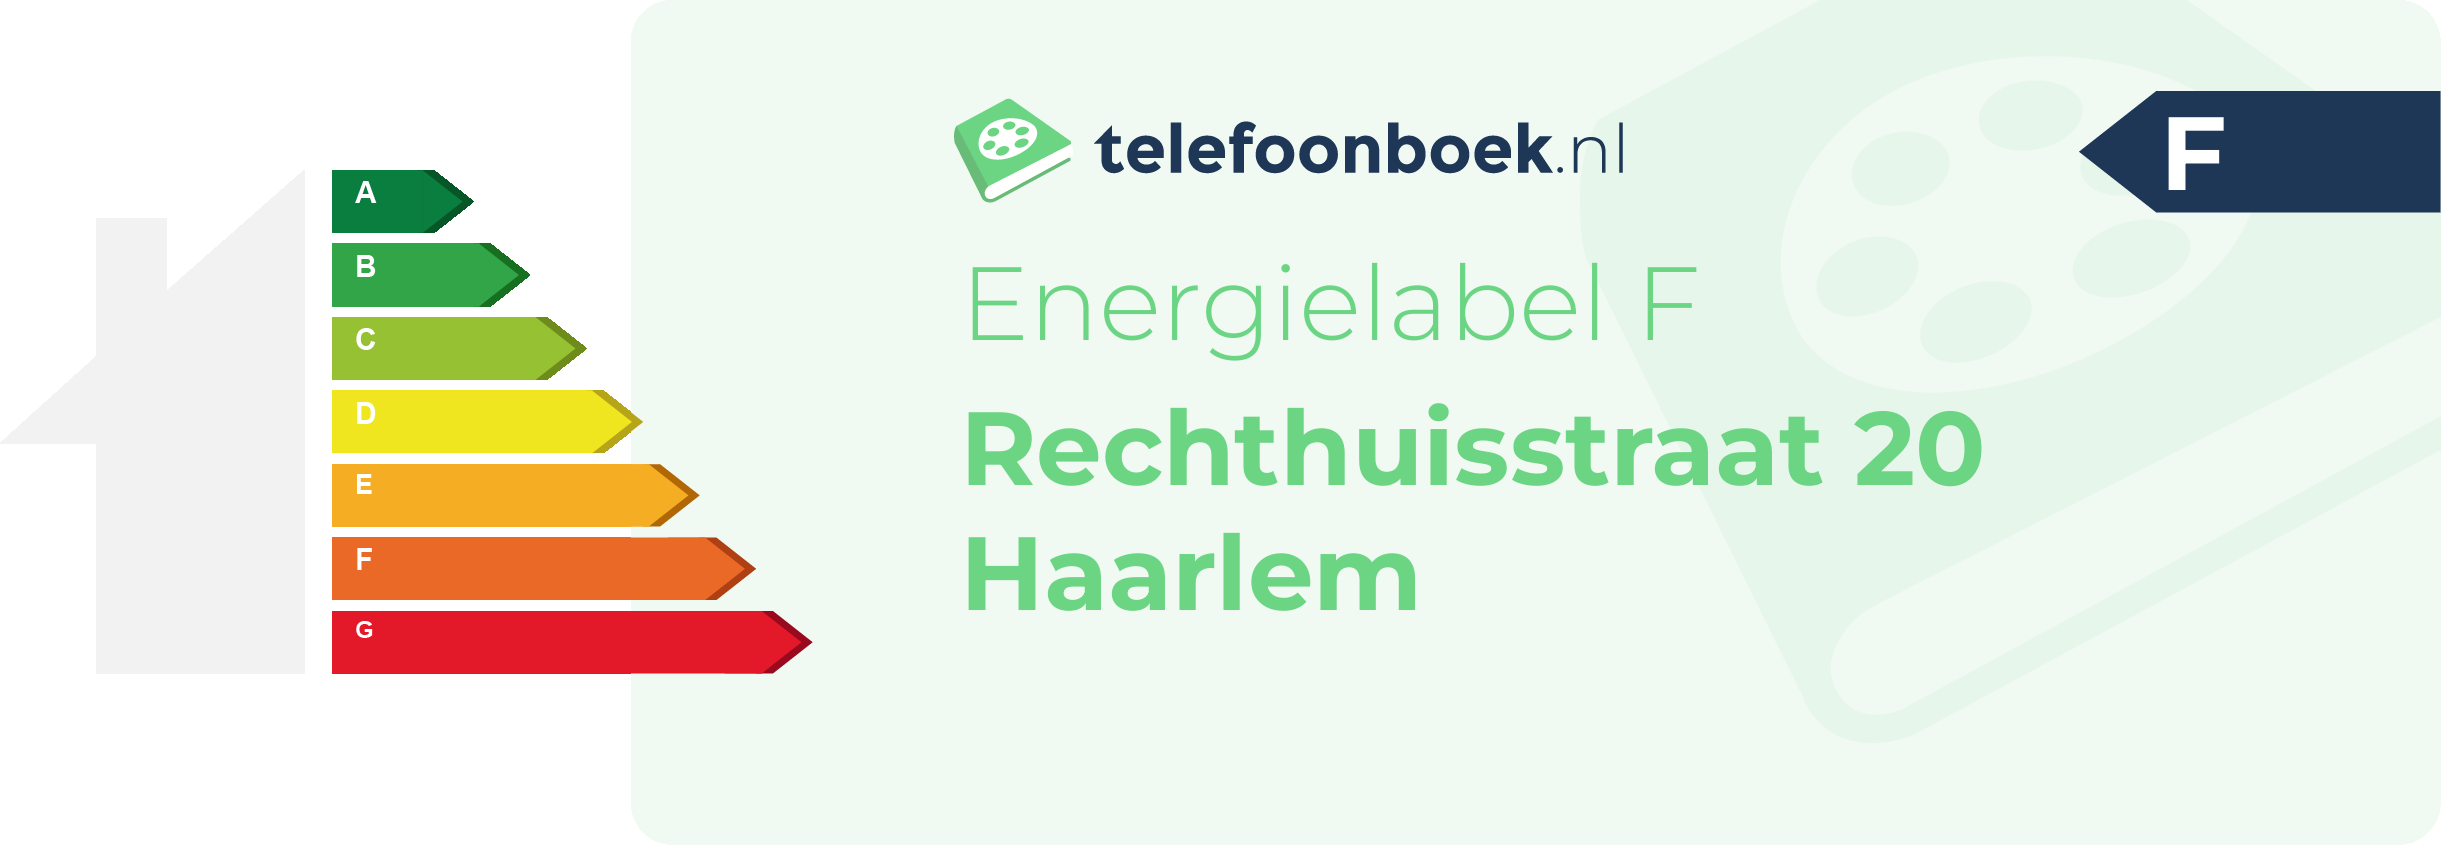 Energielabel Rechthuisstraat 20 Haarlem